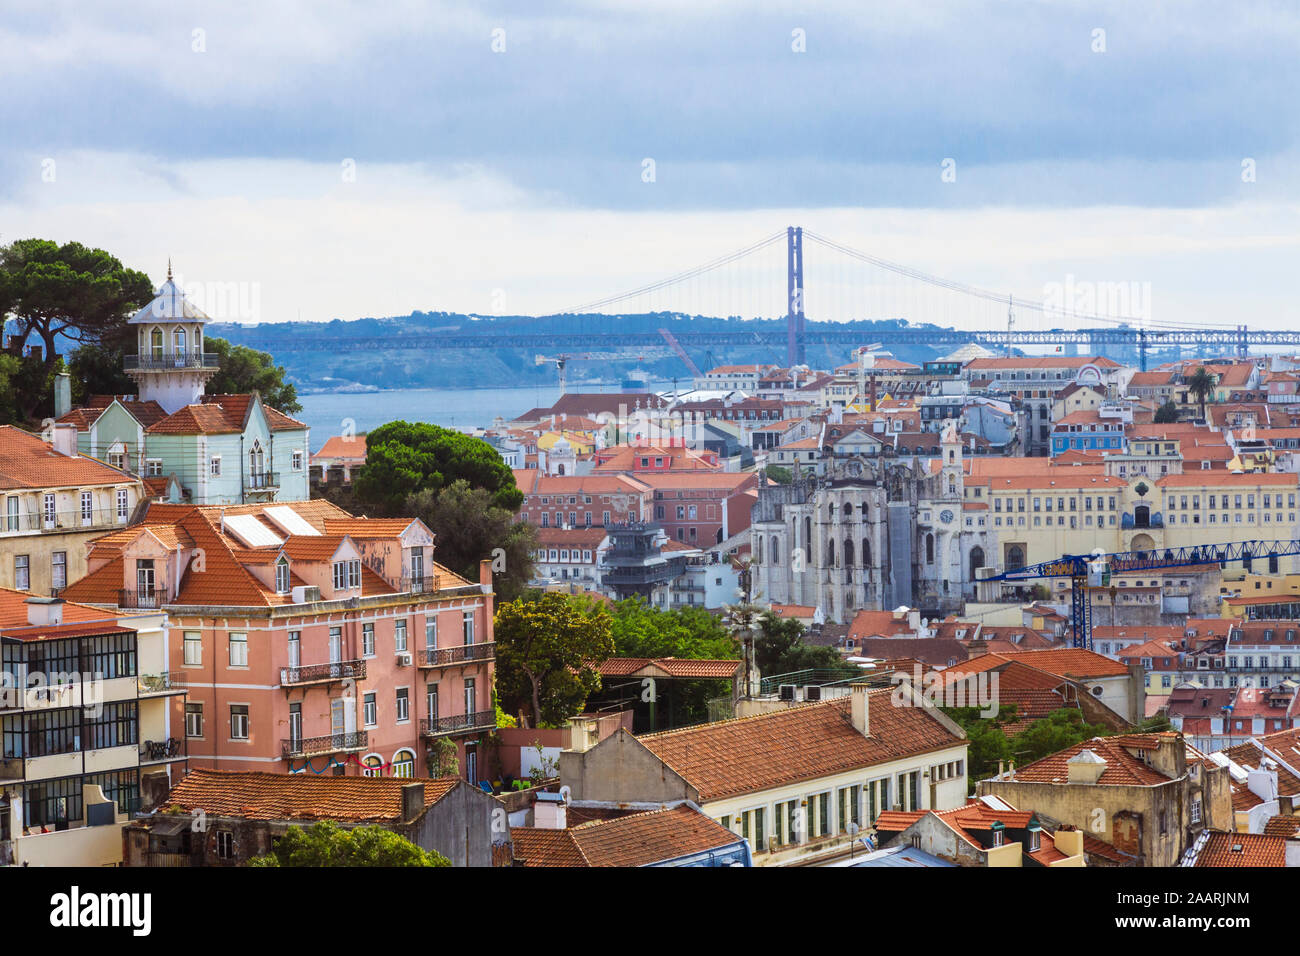 Lisbonne, Portugal - Juillet 24th, 2018 : frais généraux de Lisbonne vu de Miradouro da Graça avec pont du 25 avril en arrière-plan. Banque D'Images